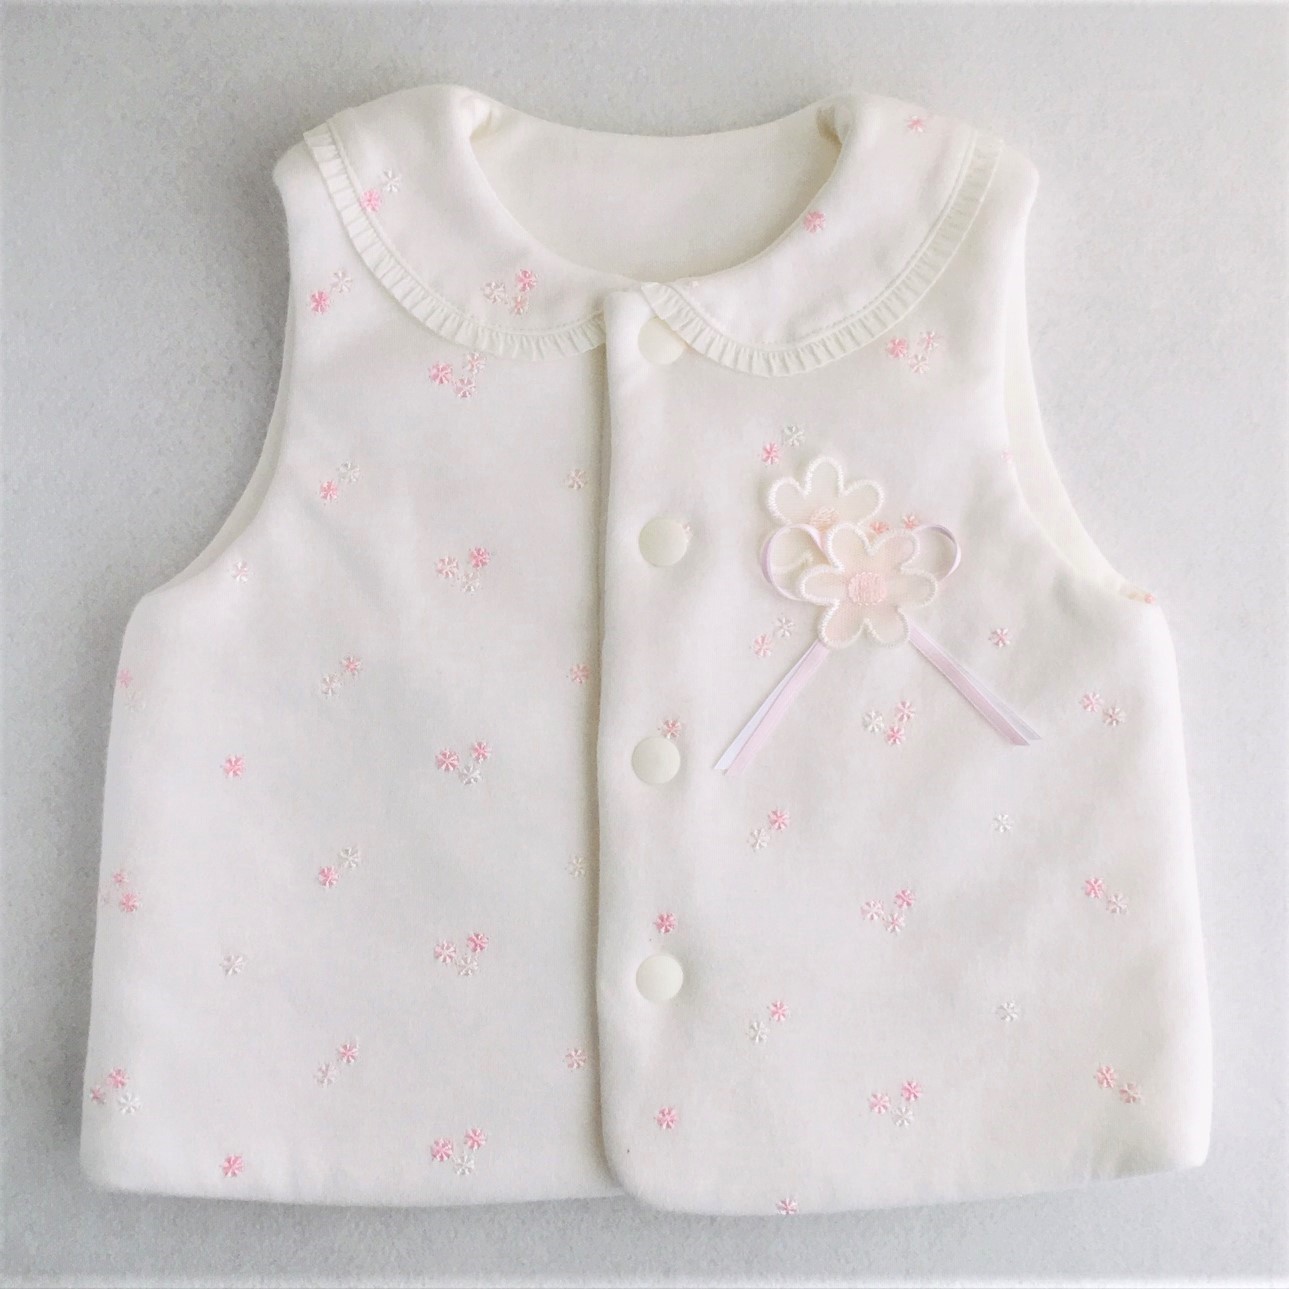 飾り衿のベスト 型紙と作り方のセット Ba We 1805 子供服の型紙ショップ Tsukuro ツクロ